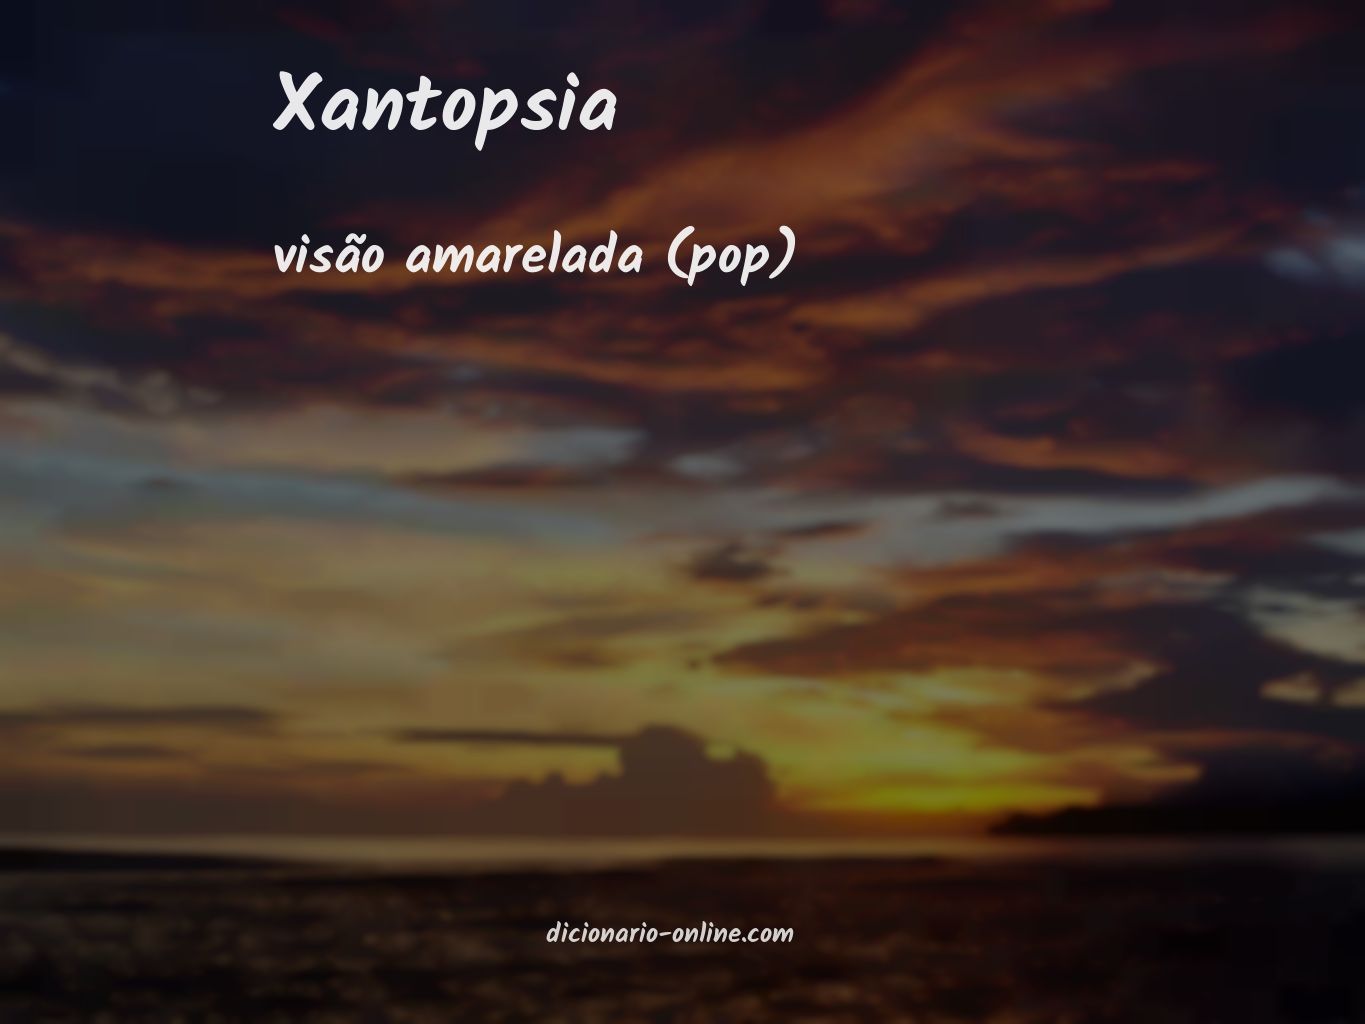 Significado de xantopsia